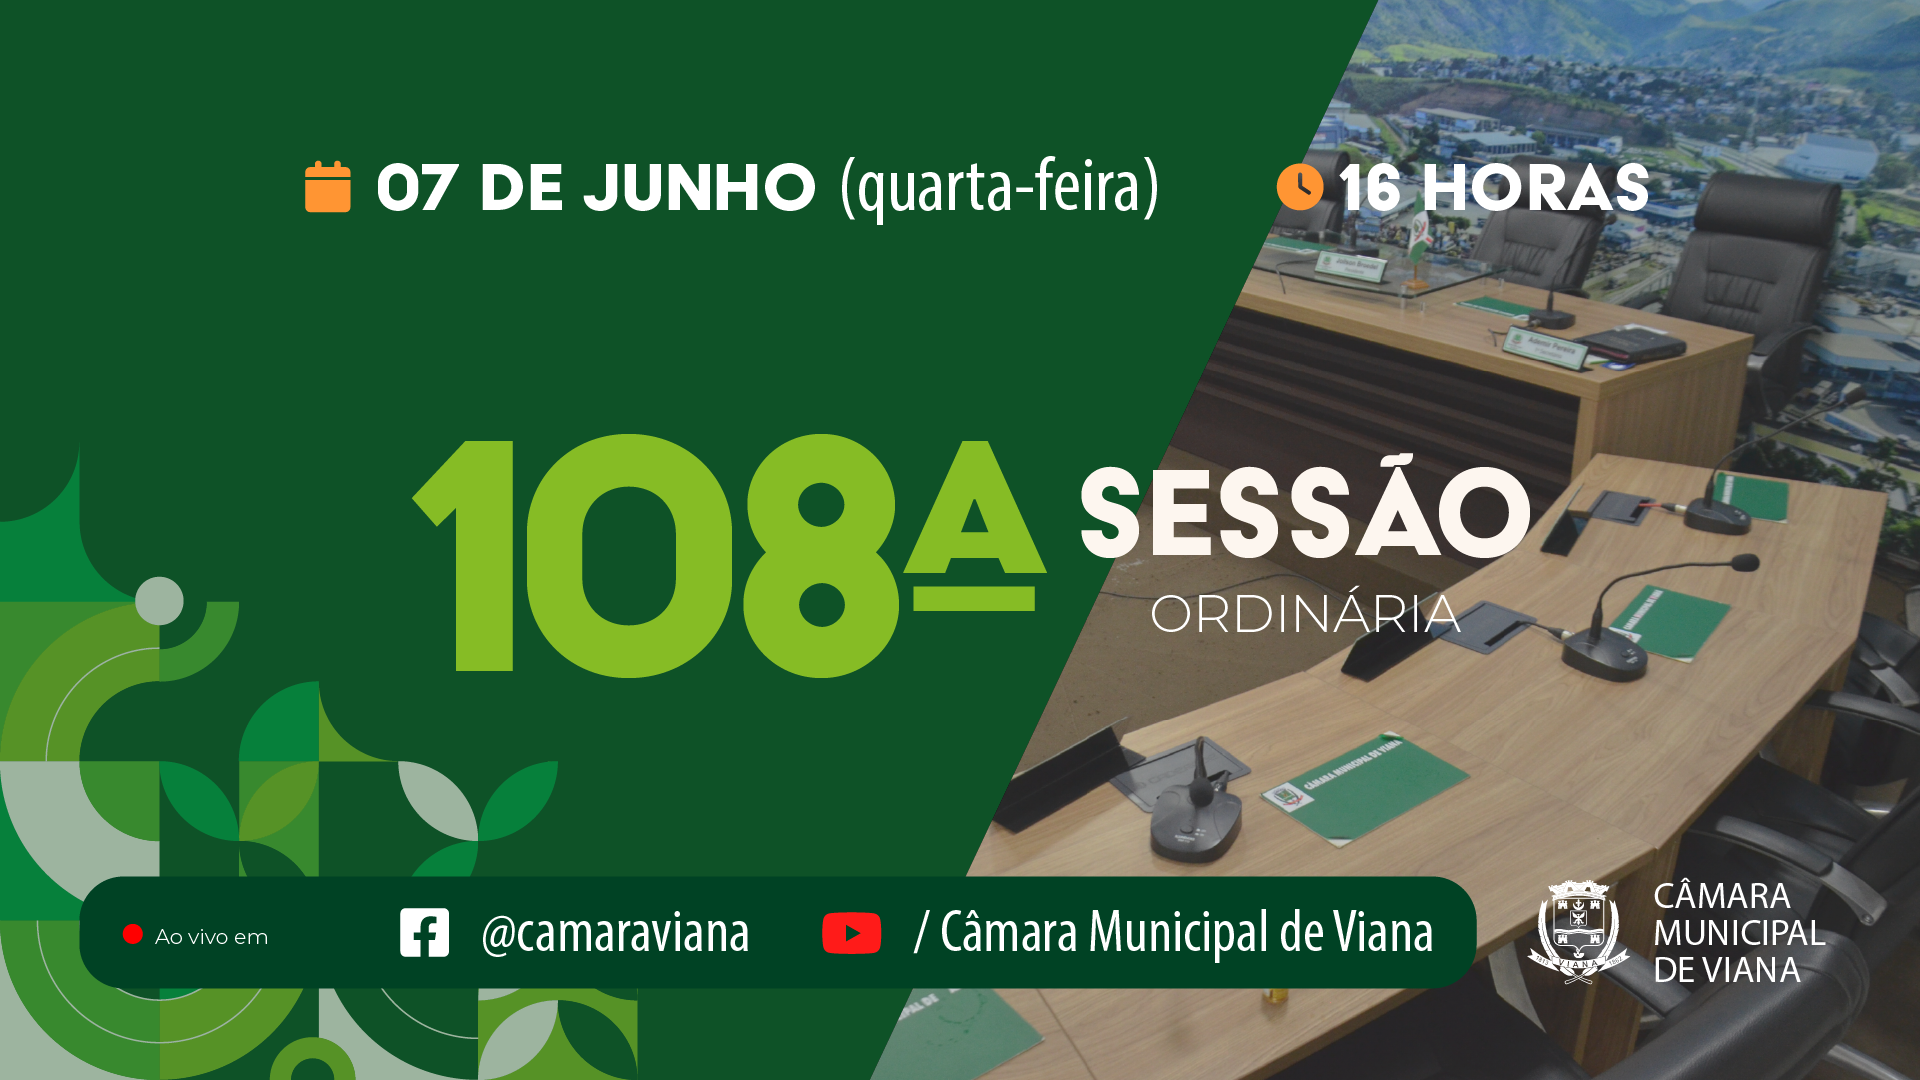 Notícia: PAUTA DA CENTÉSIMA OITAVA (108ª) SESSÃO ORDINÁRIA